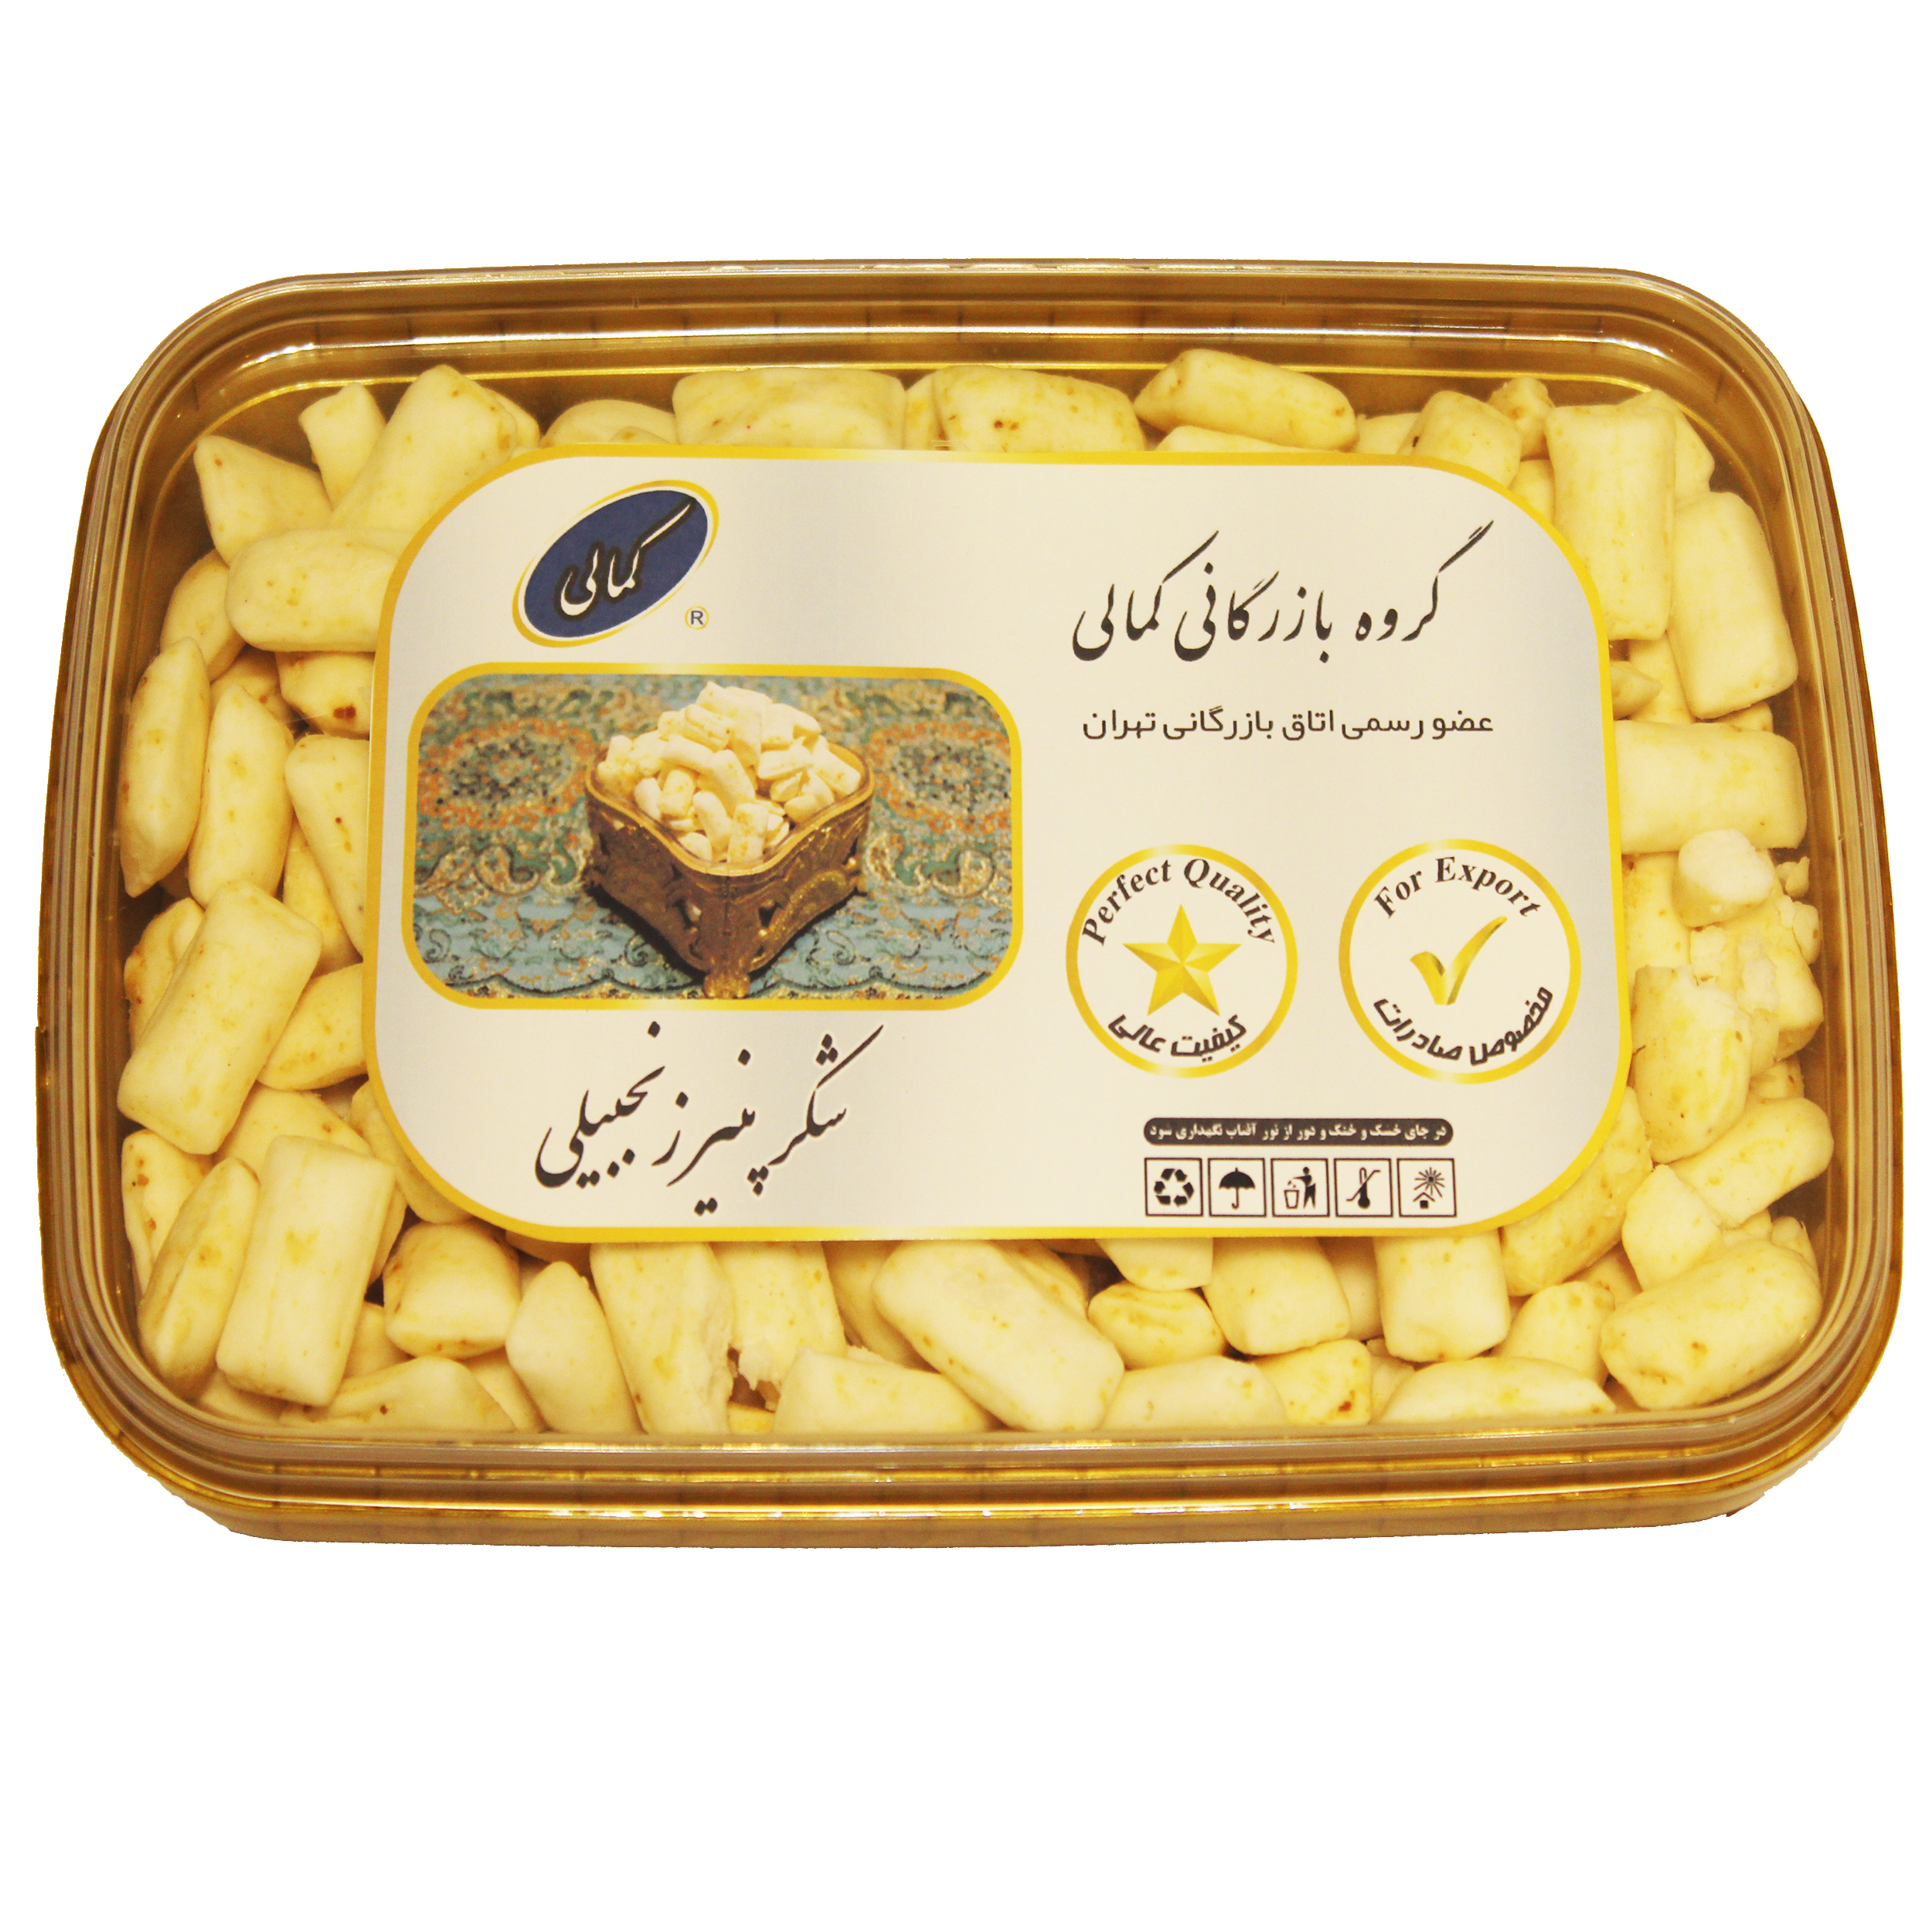 شکر پنیر زنجبیلی صادراتی   گروه بازرگانی کمالی - 500 گرم